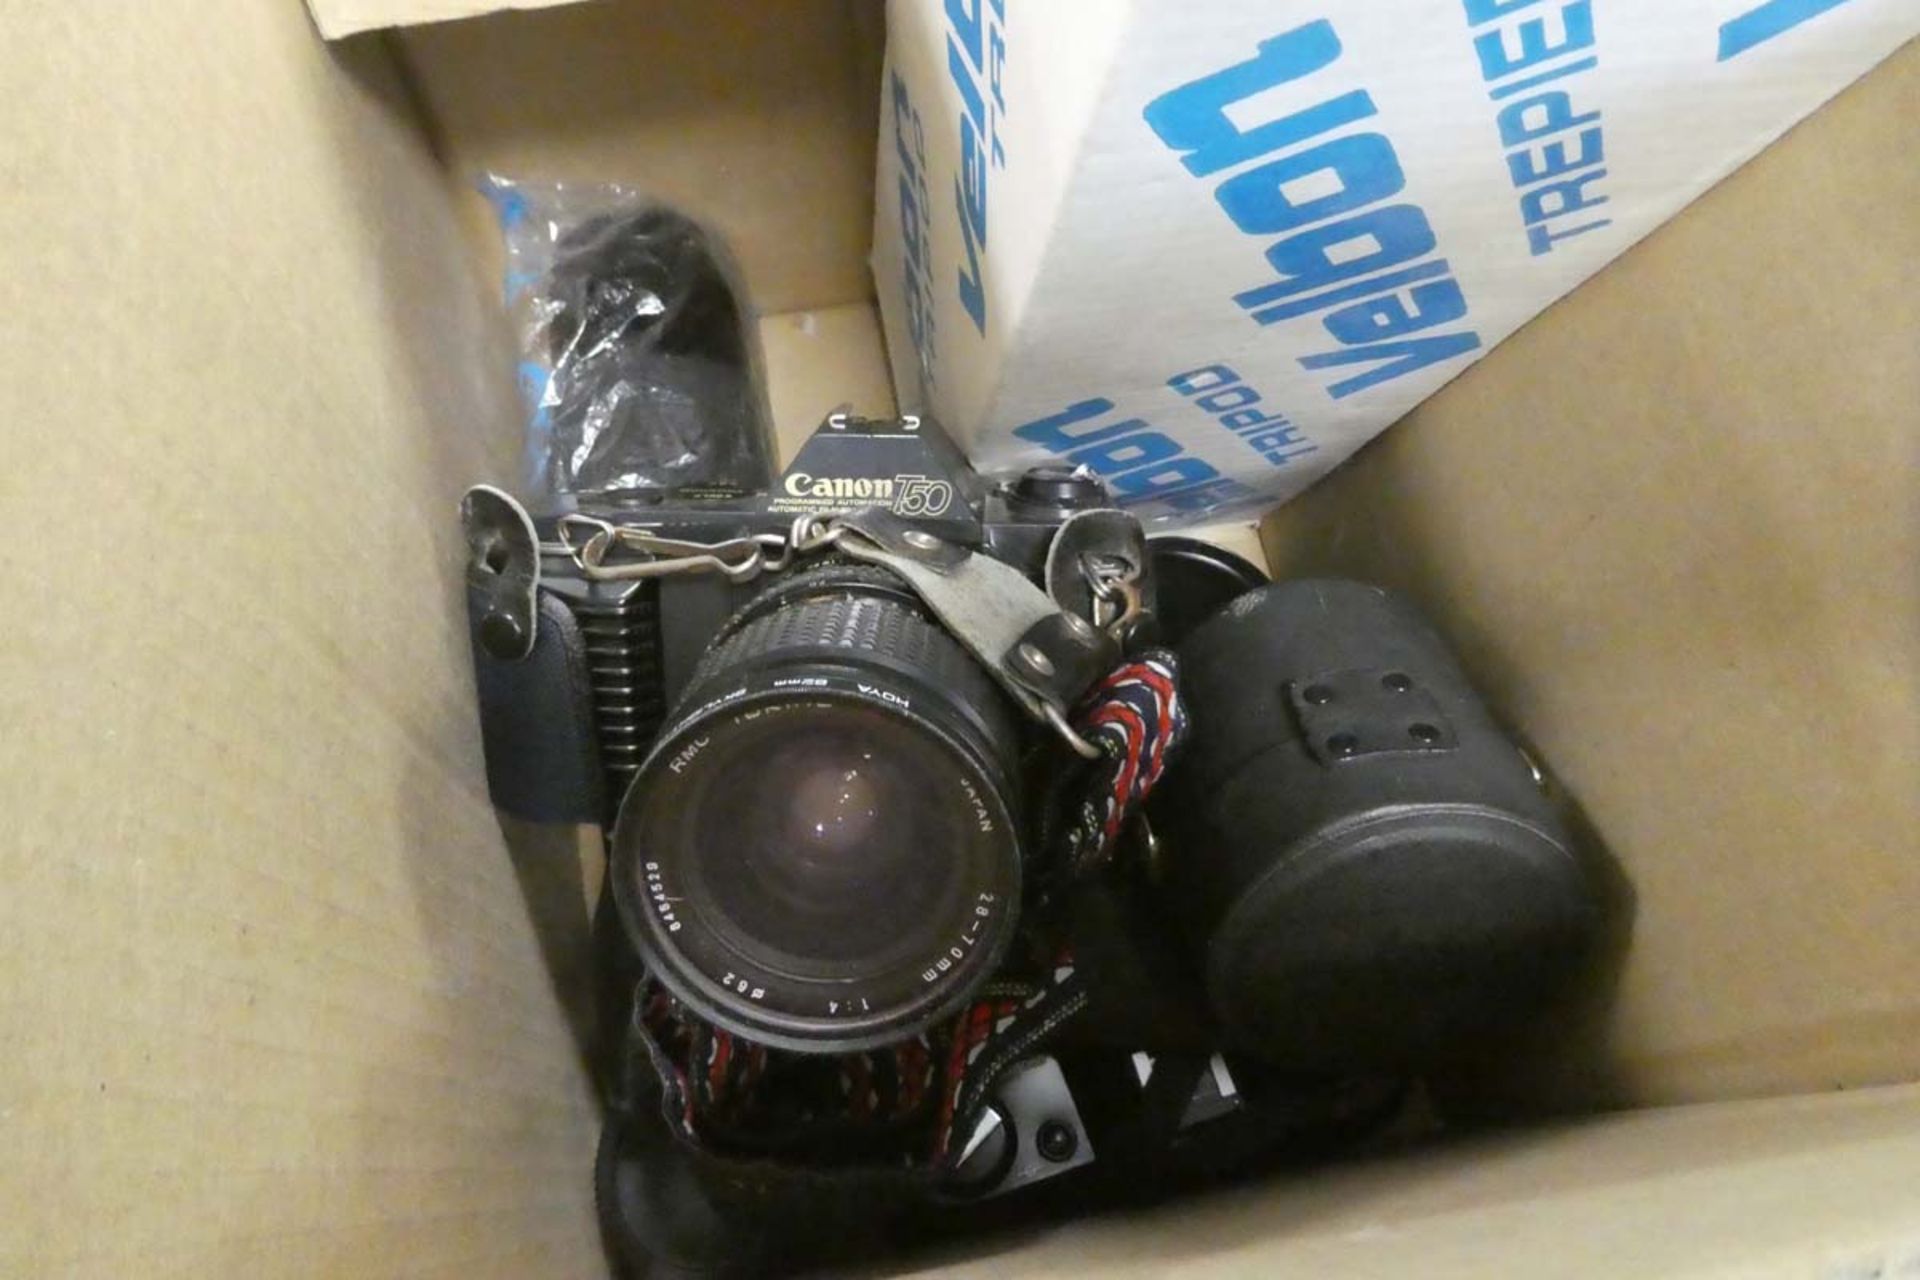 Canon T50 film camera with Canon AE1 film camera